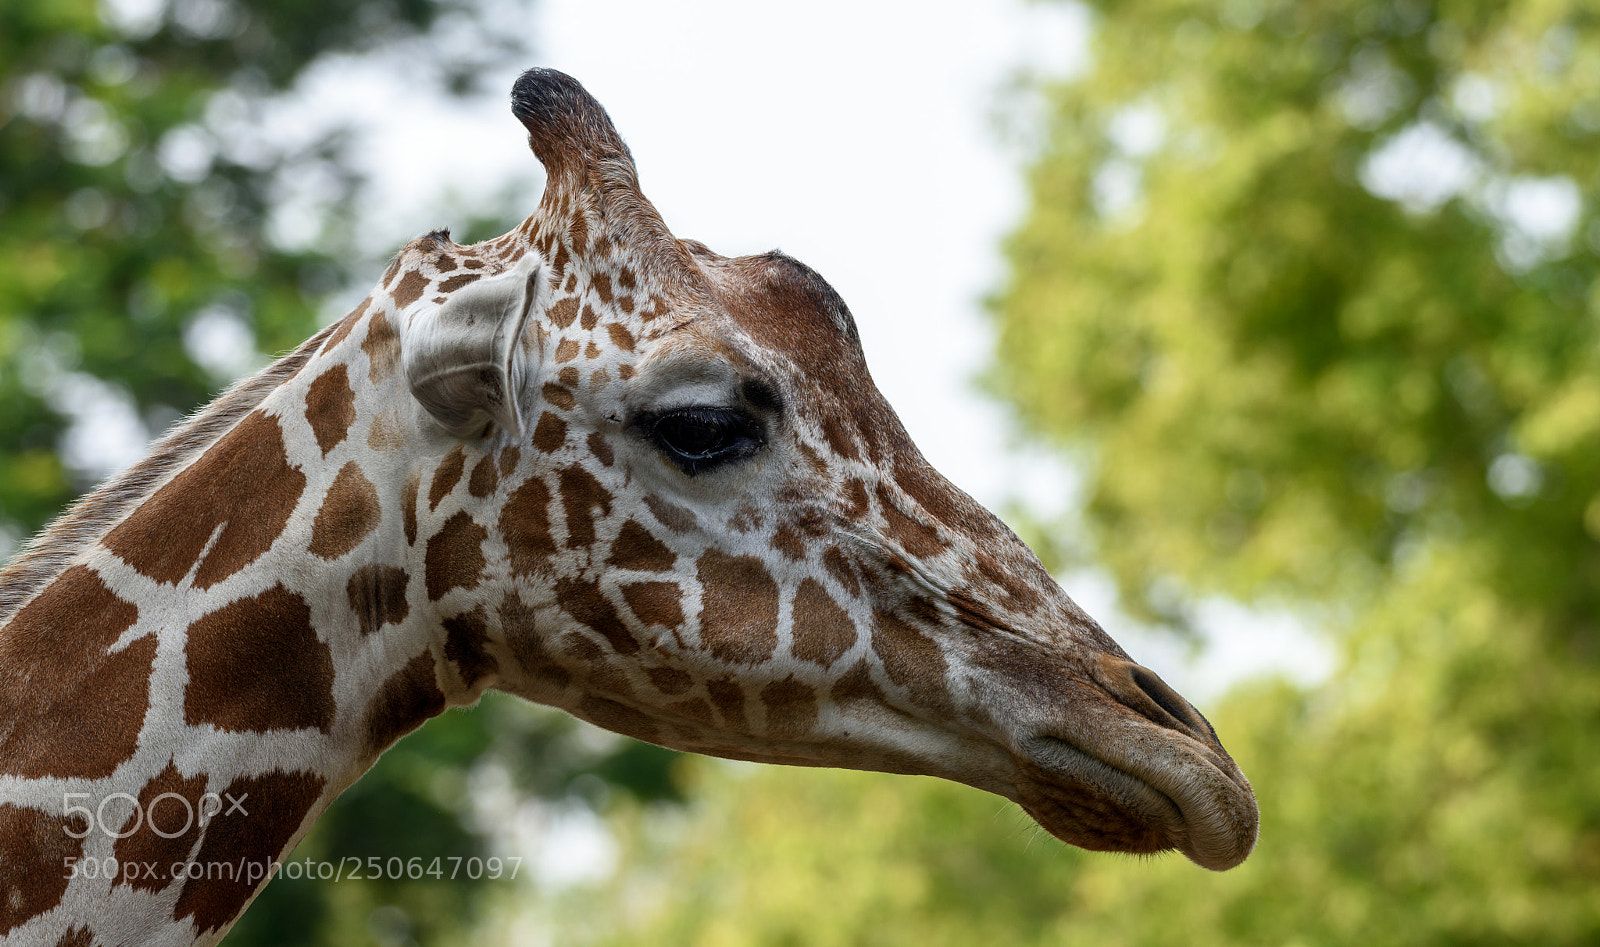 Nikon D810 sample photo. Giraffe head photography